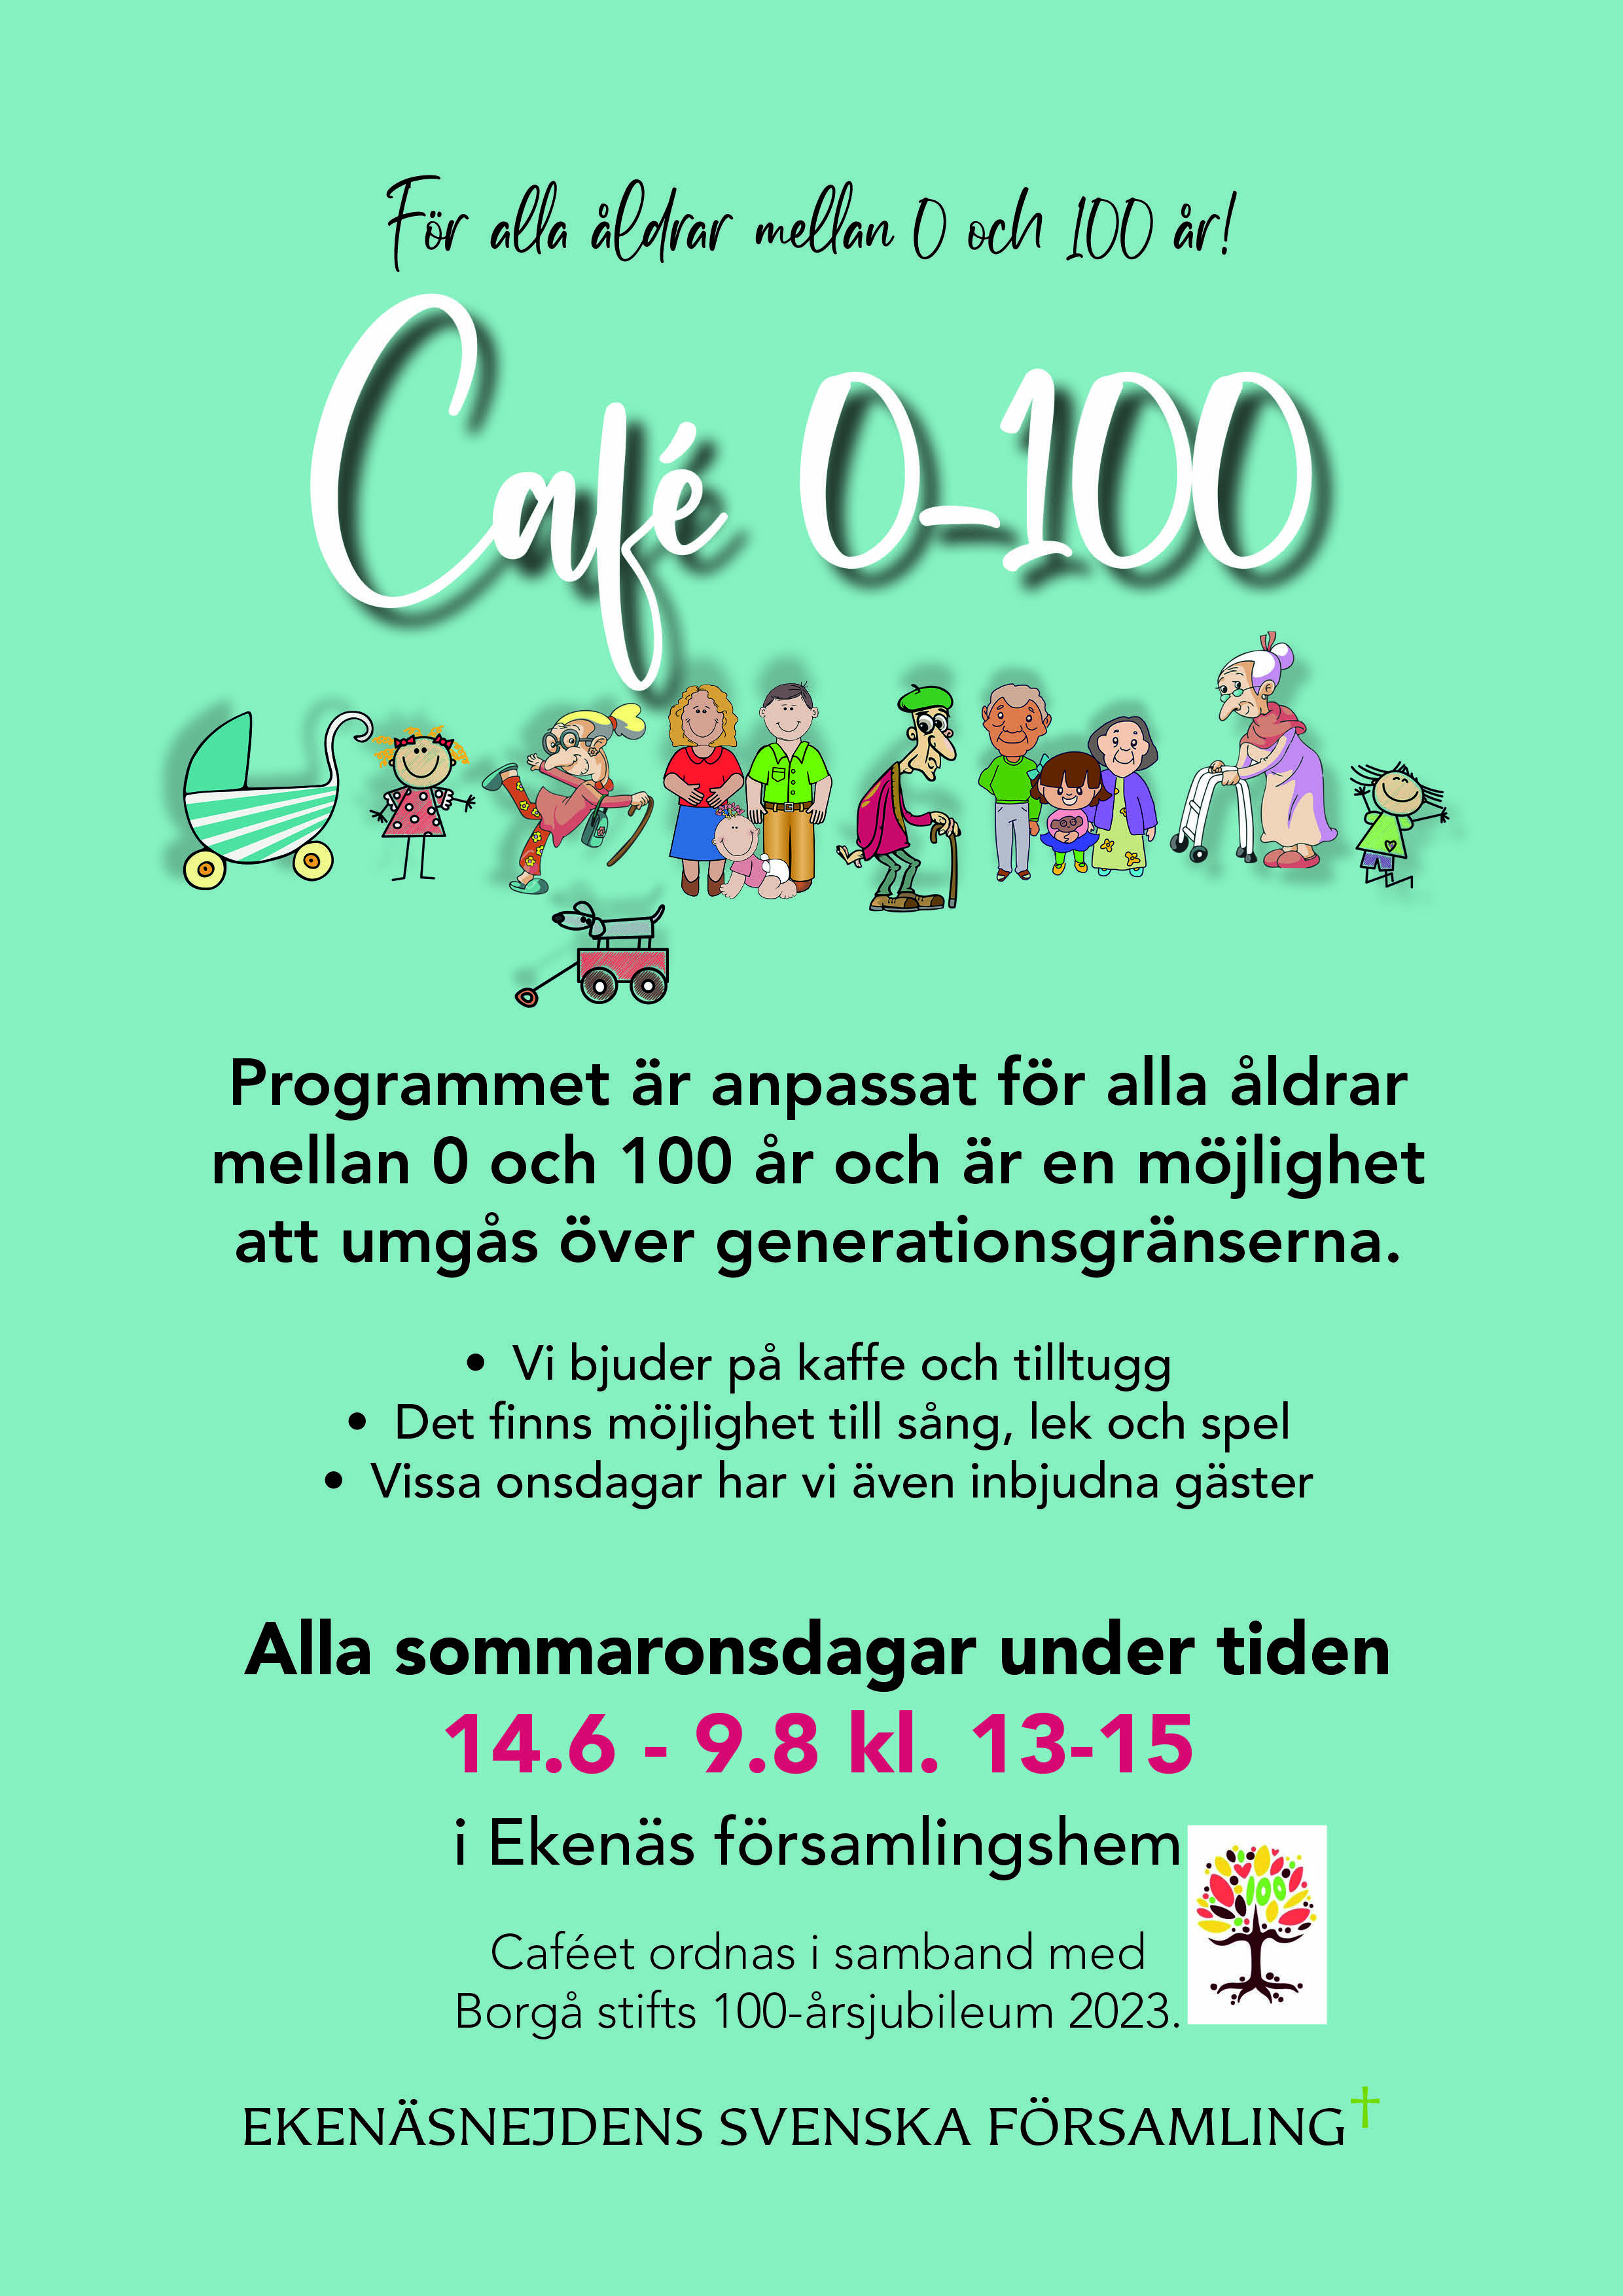 Affisch för café 0-100 men små bilder av figurer i olika åldrar, samt trädlogon för Borgå stift 100 år.